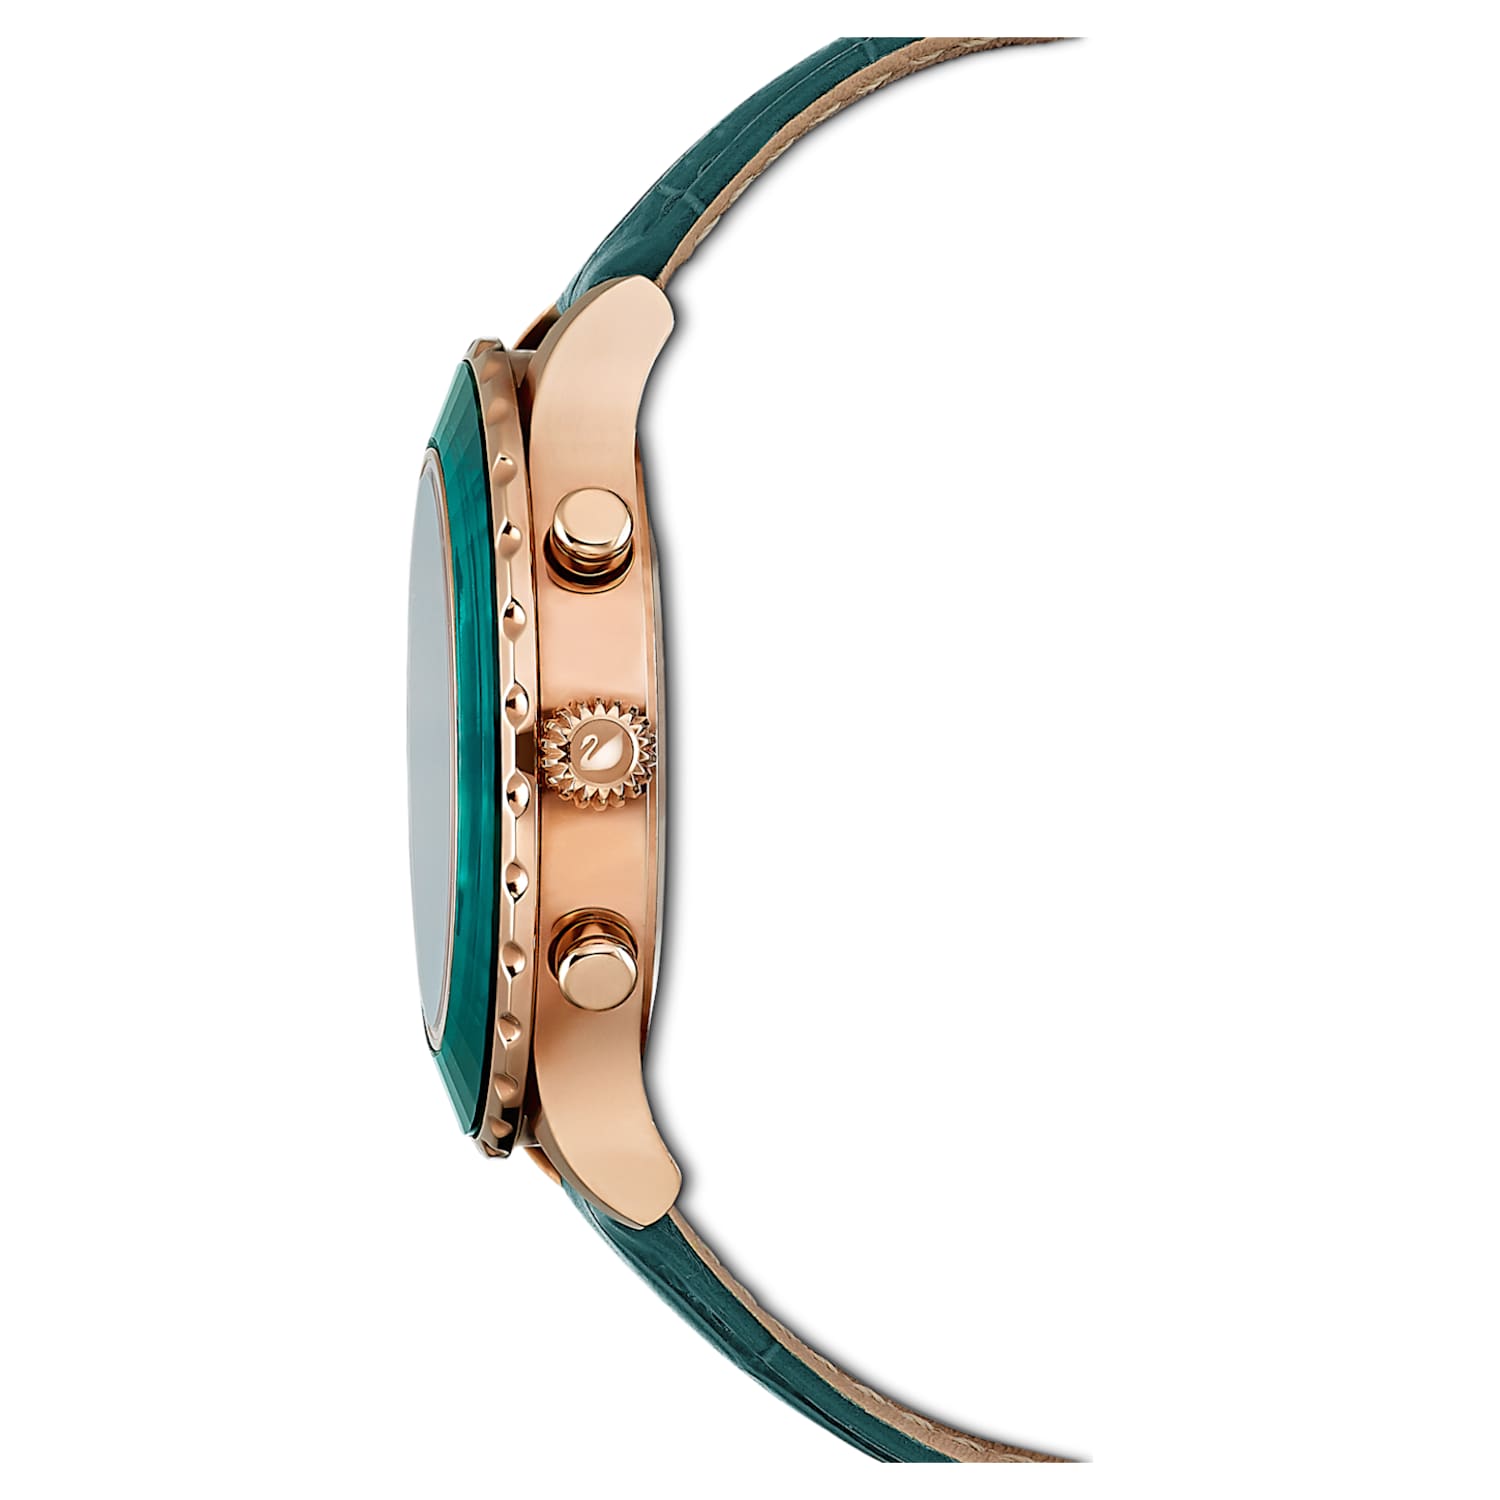 ambición Máquina de escribir término análogo Octea Lux Chrono watch, Swiss Made, Leather strap, Green, Rose gold-tone  finish